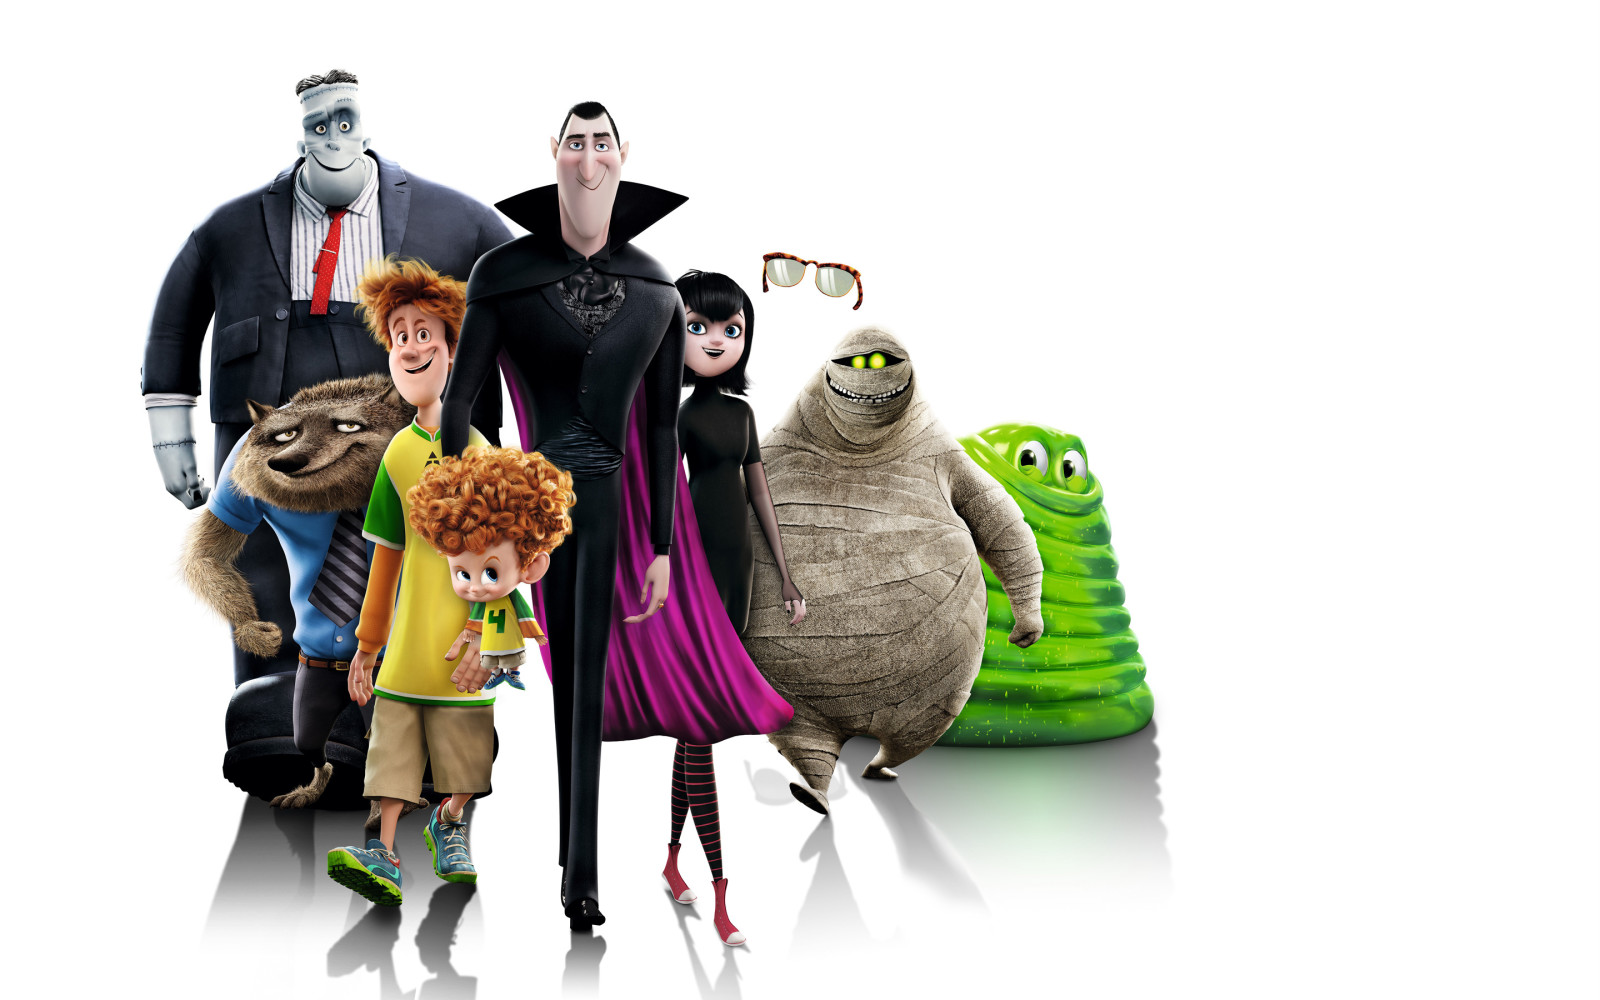 ตัวละคร, พื้นหลังสีขาว, การ์ตูน, แดรกคิวลา, Frankenstein, Mavis, เดนนิส, โจนาธาน